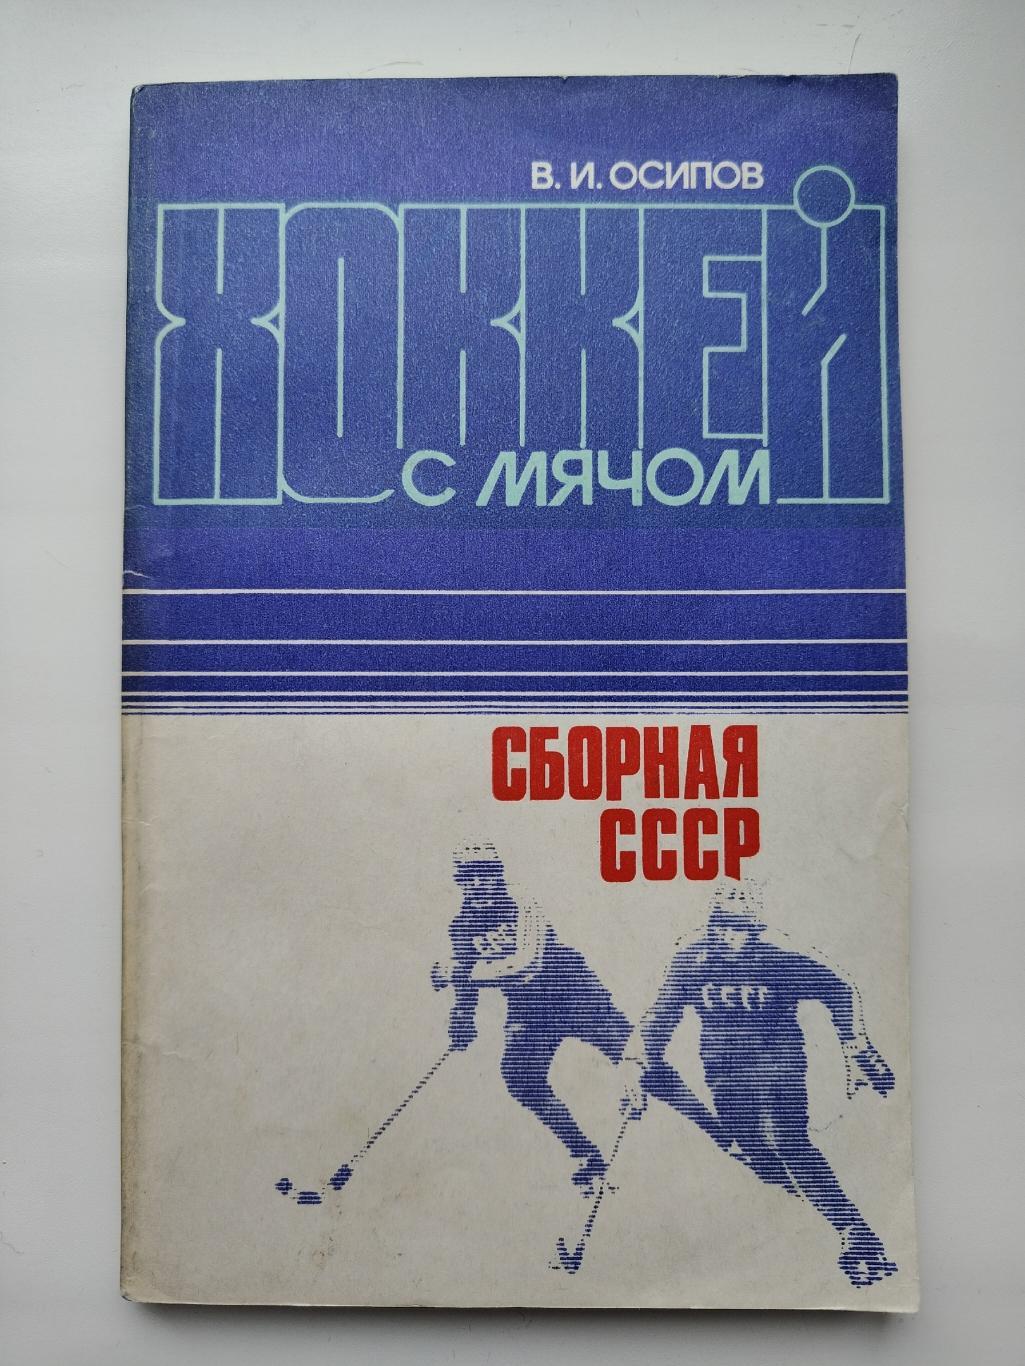 Хоккей с мячом. Виктор Осипов Сборная СССР (Москва ФиС 1984 144 страницы)